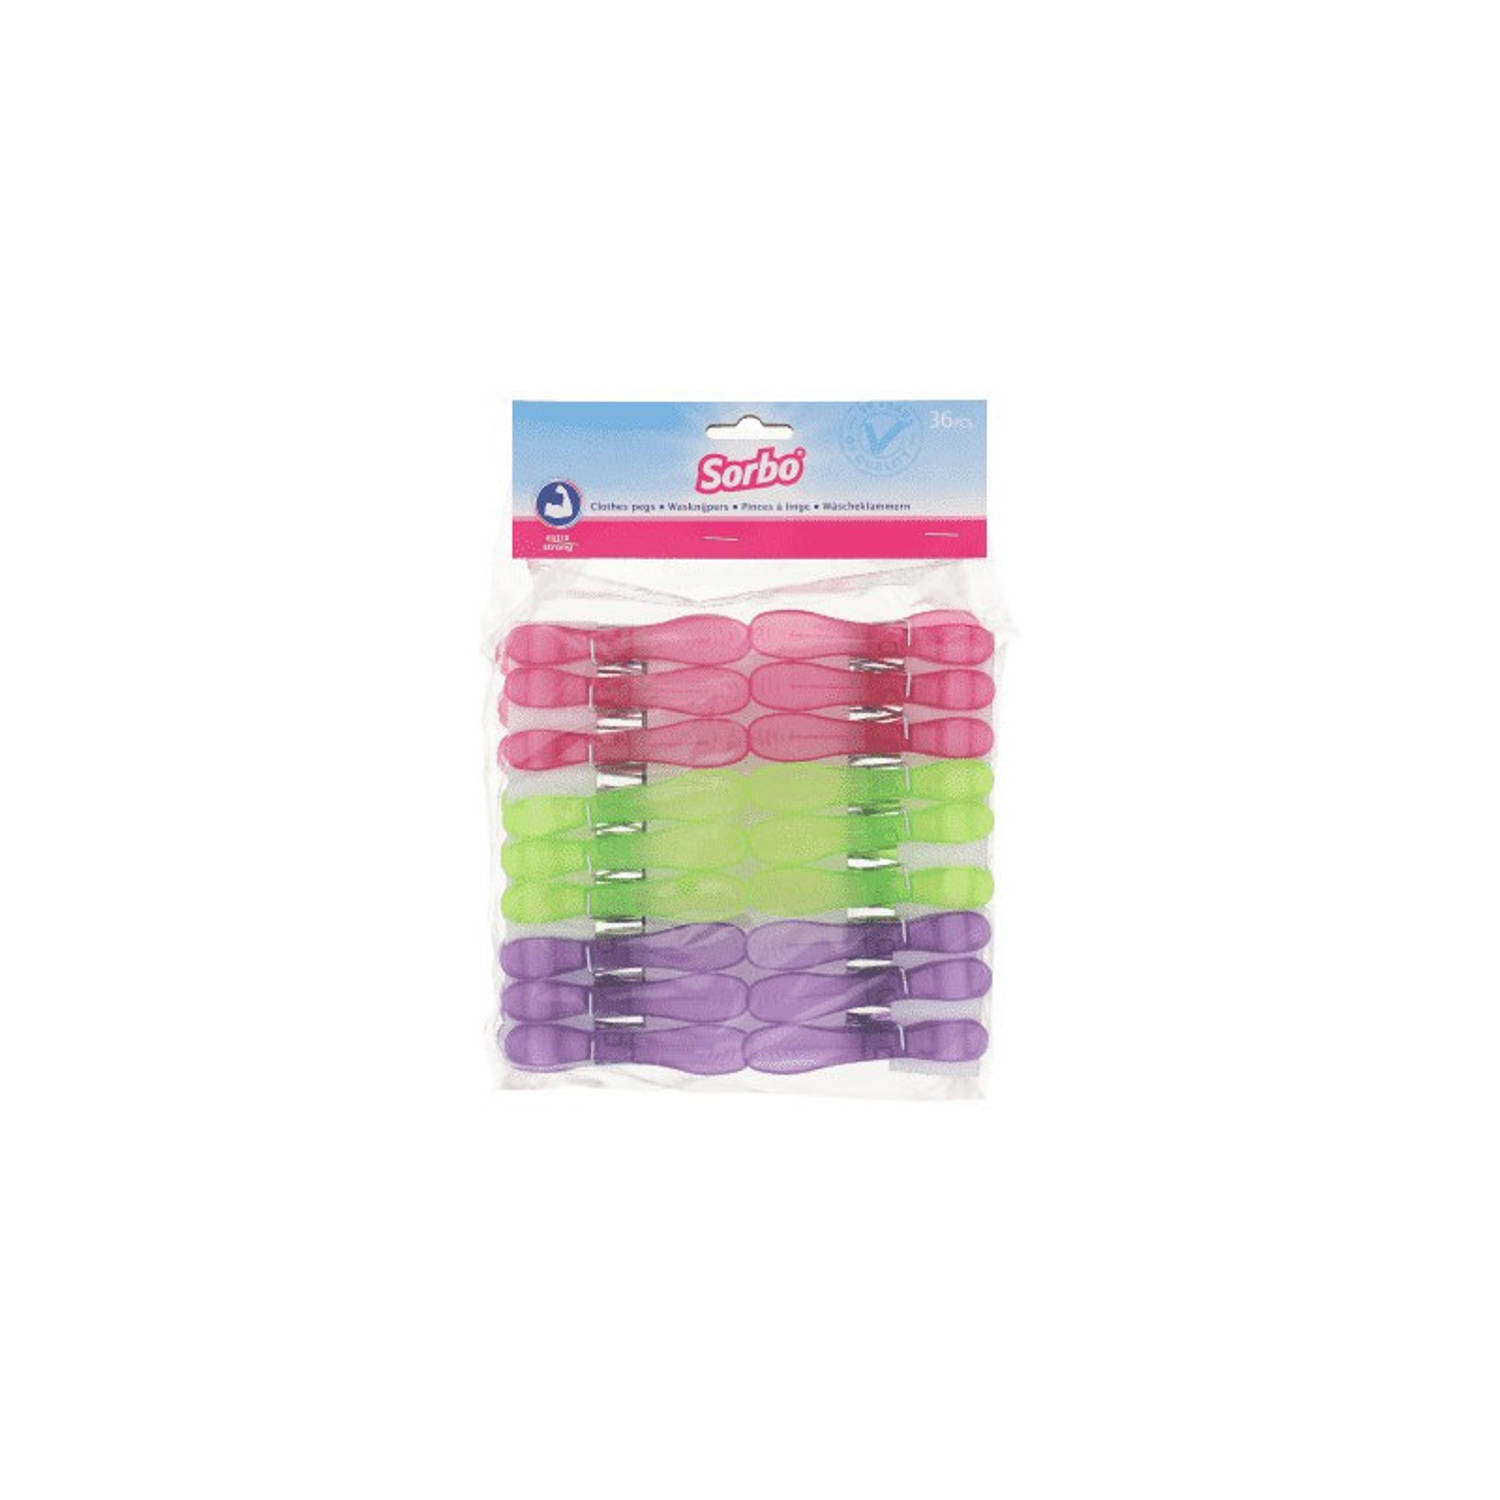 Sorbo 180x Gekleurde wasgoedknijpers - Plastic wasgoedknijpers - Knijpers/wasspelden voor wasgoed 180 stuks